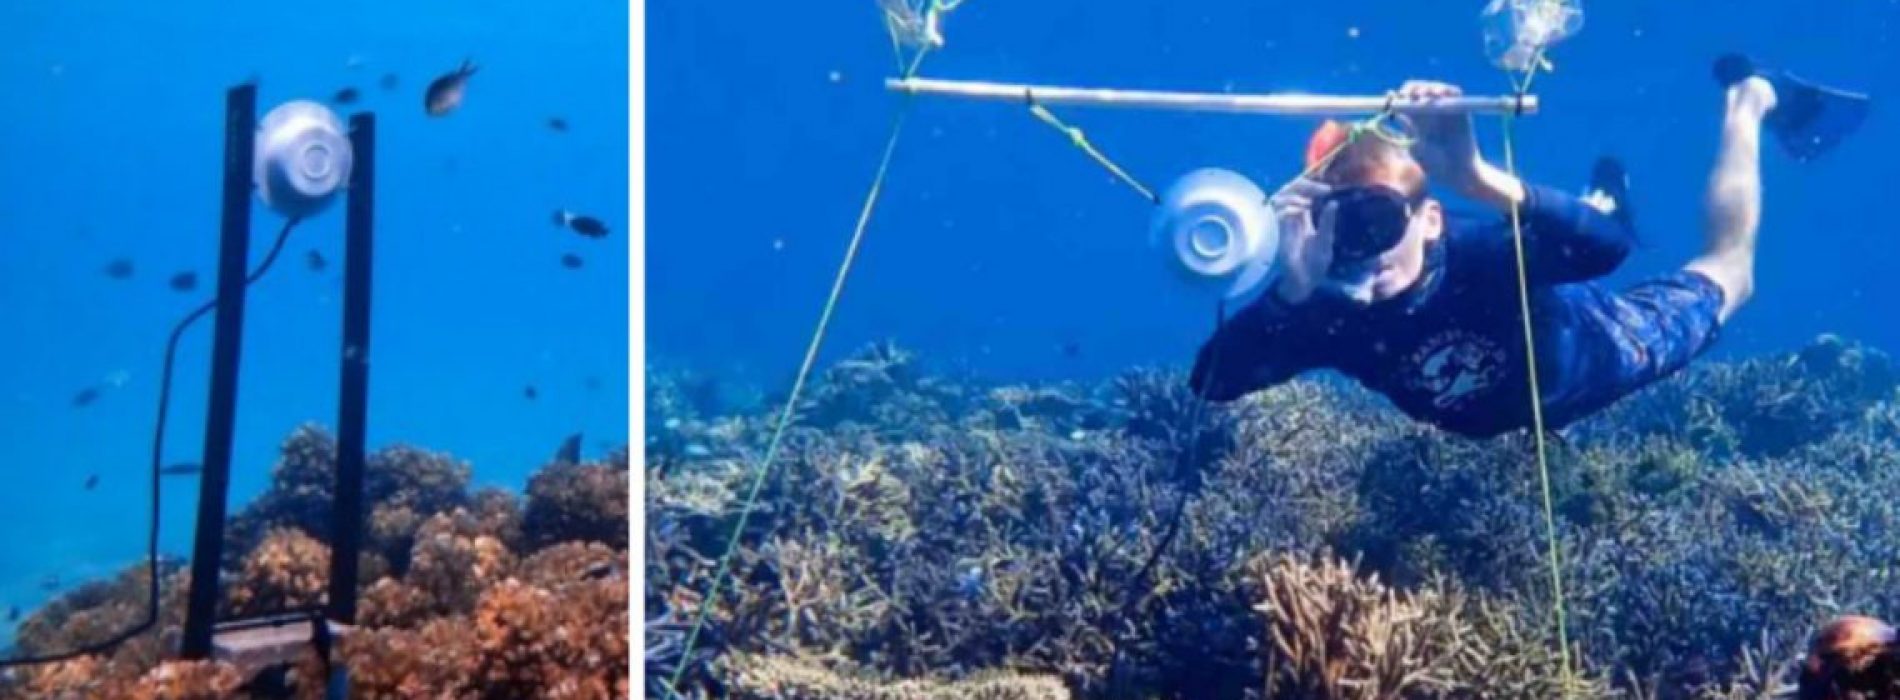 Wetenschappers spelen onderwatergeluiden om dode koraalriffen weer tot leven te brengen